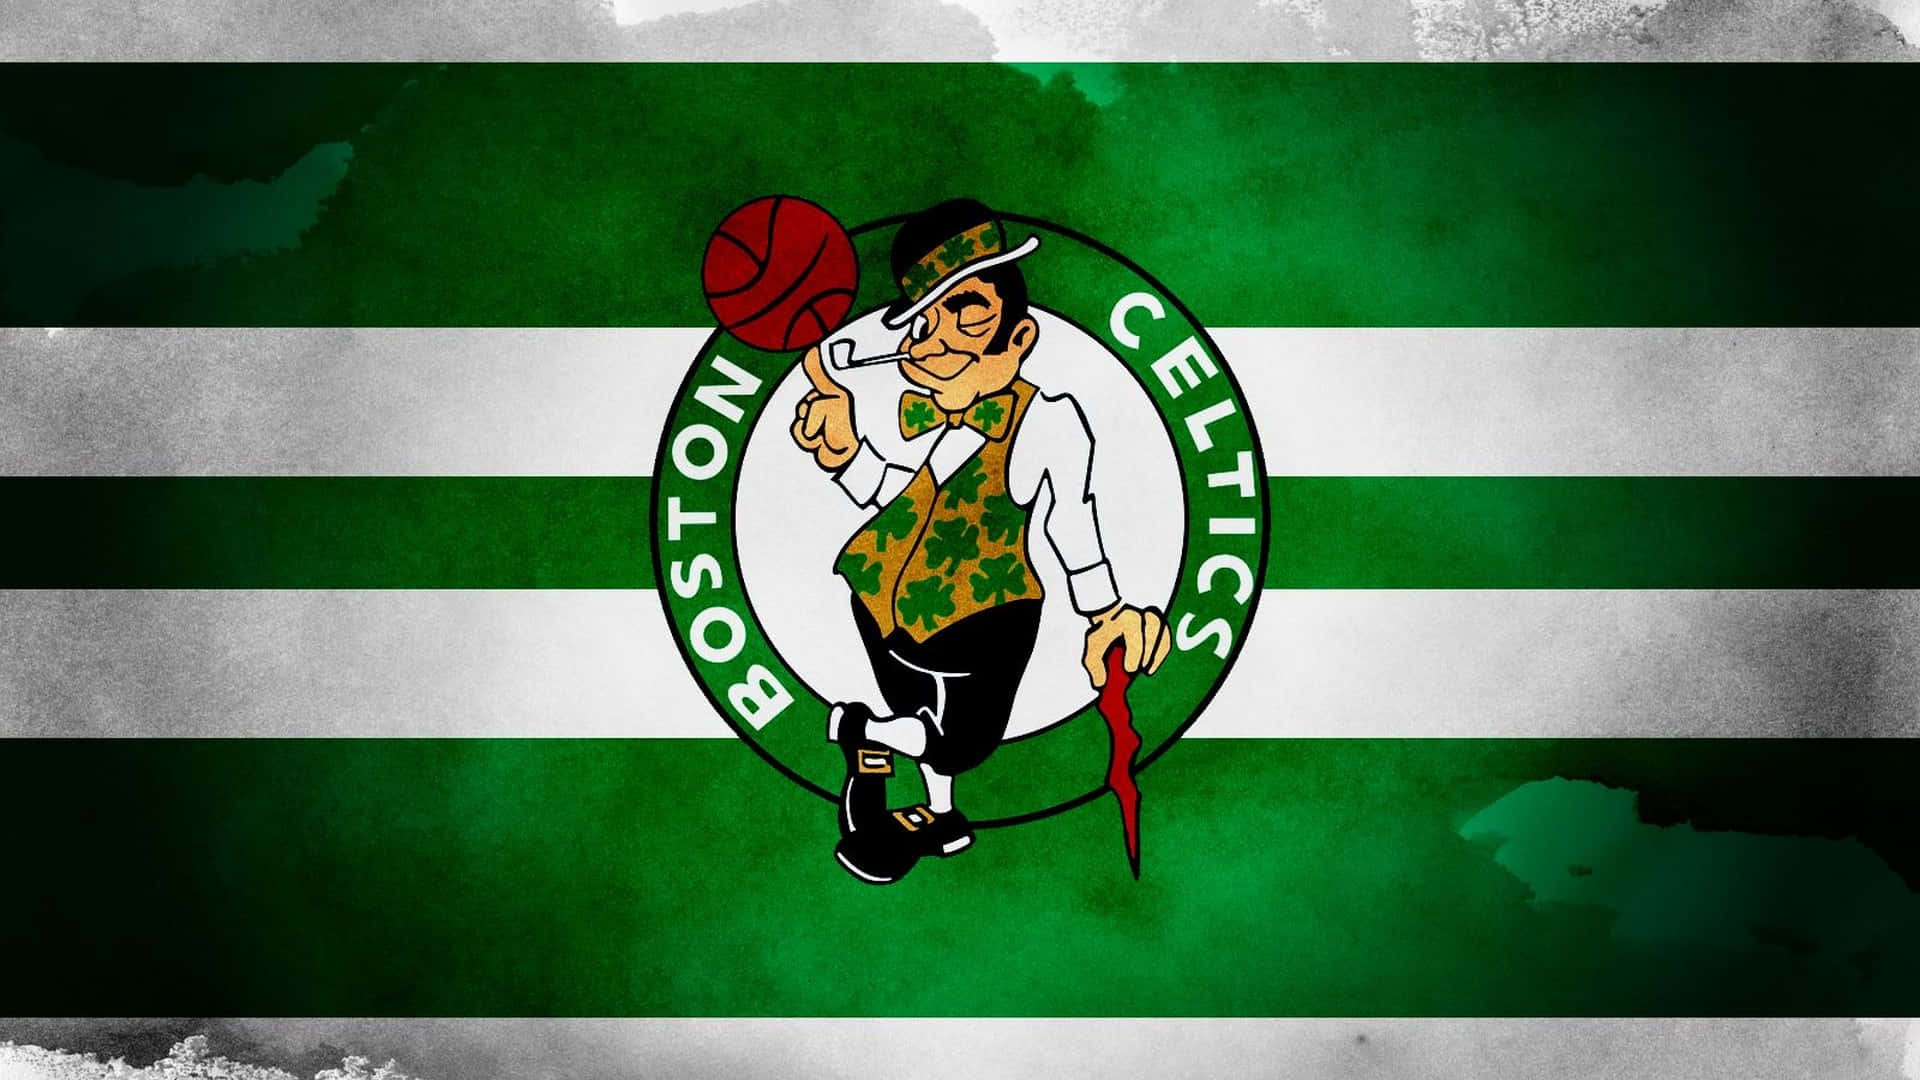 Firaboston Celtics Seger I Mästerskapet